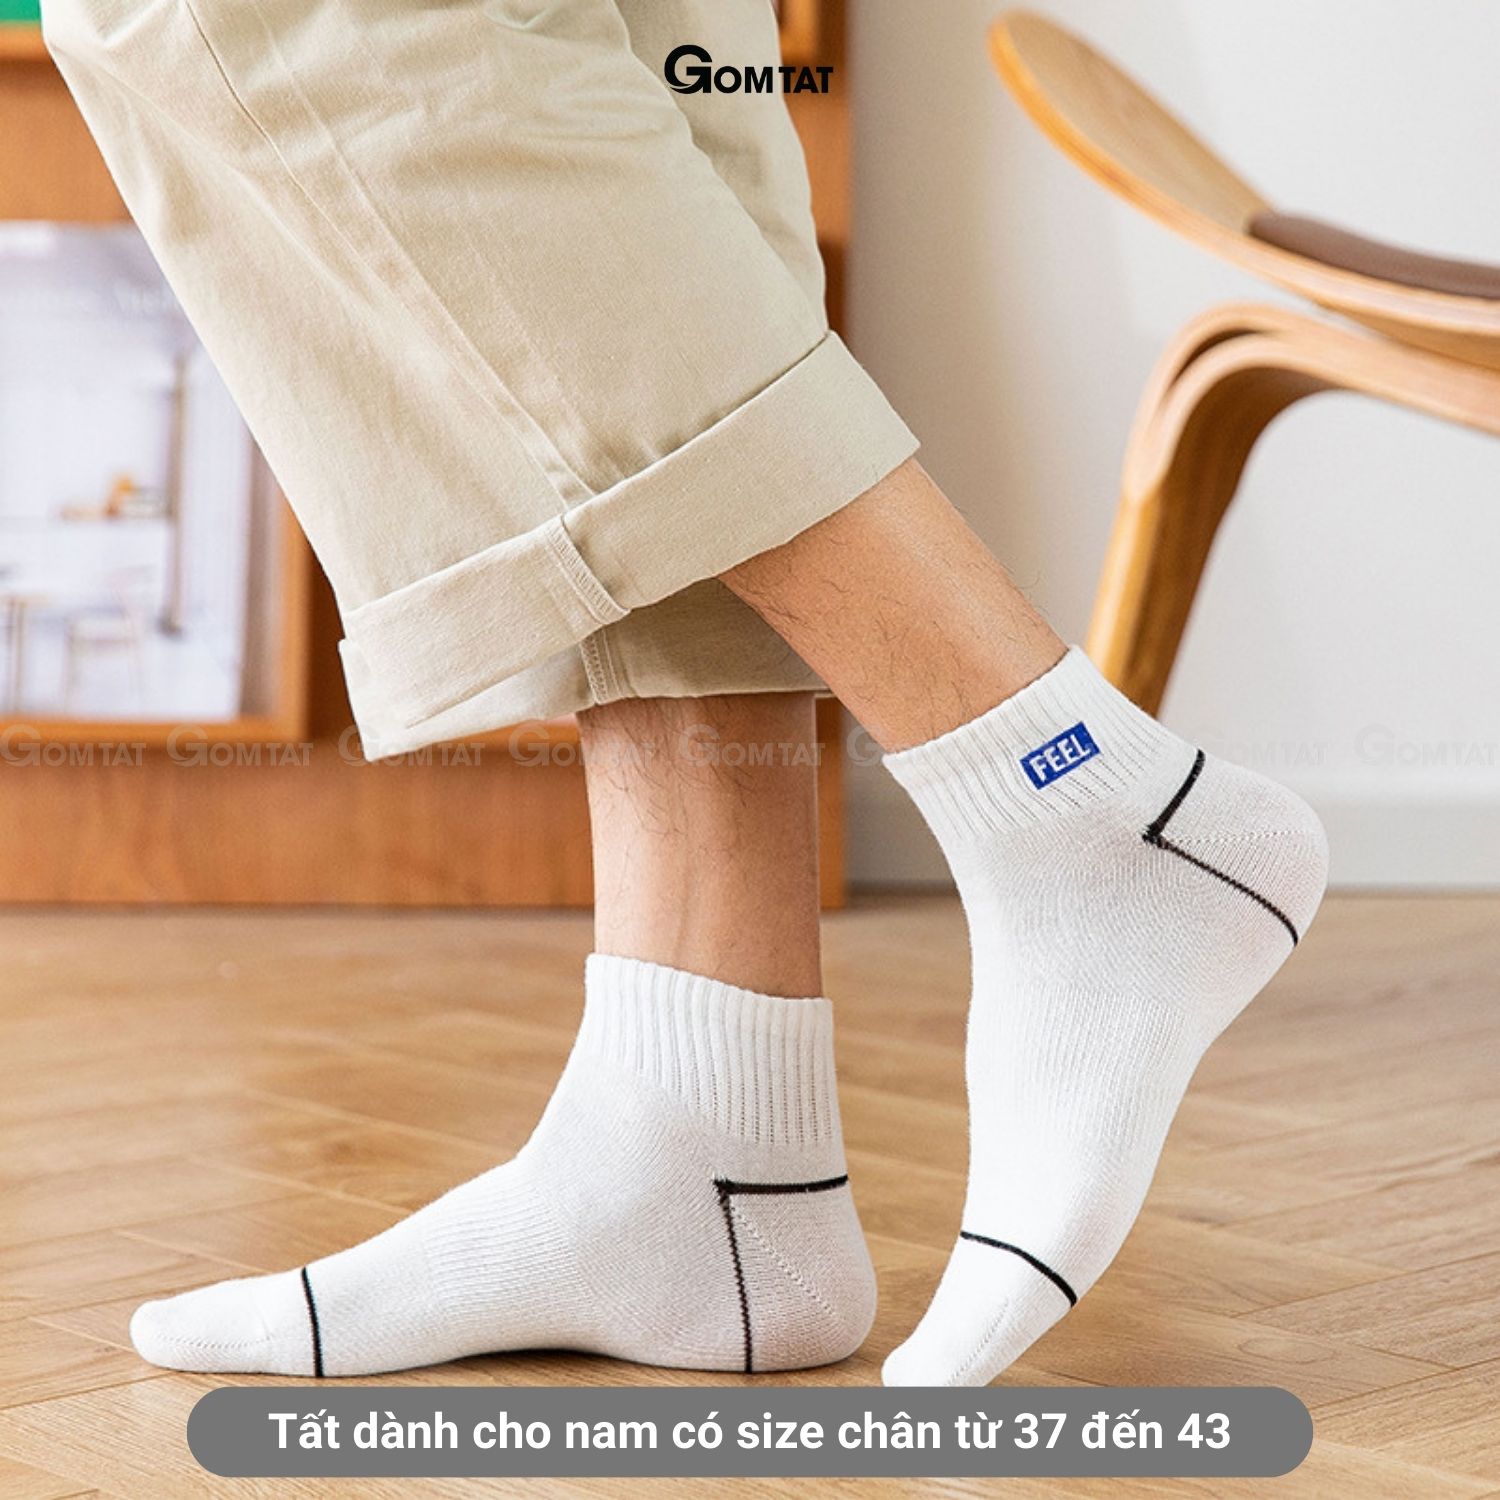 Set 6 đôi tất vớ nam cổ ngắn GOMTAT cao cấp mẫu Feel, chất liệu cotton mềm mại thoáng mát cực êm chân - NACN-FEEL-CB6